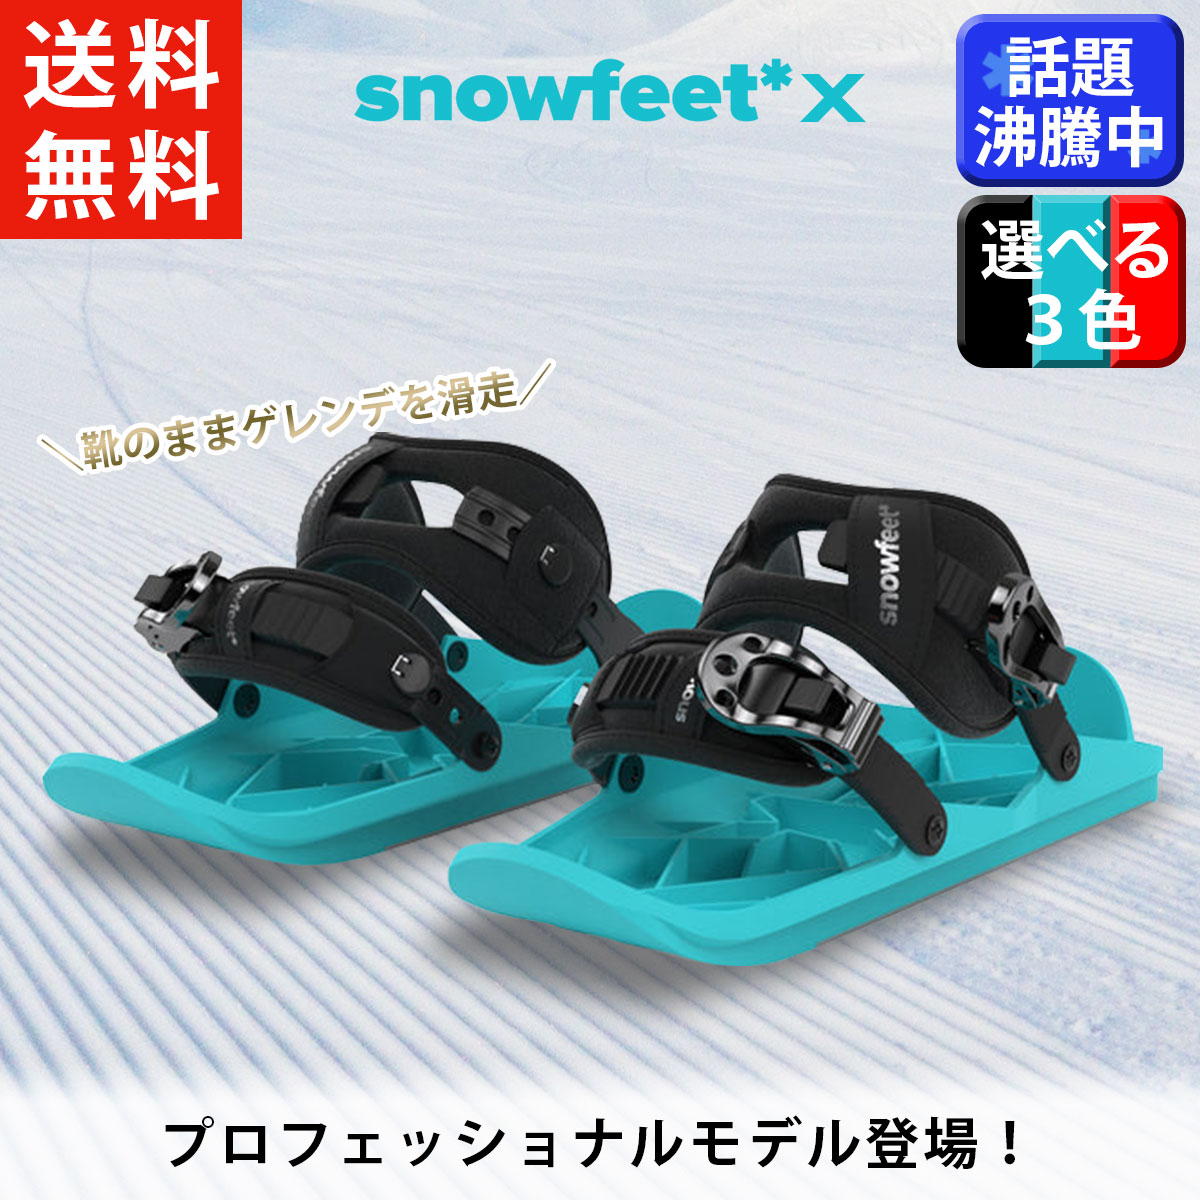 【 Snowfeet Japan 公式 】 2023-2024 モデル snowfeet X スノーフィート ミニスキー ウィンタースポーツ ウィンターシューズ スノーボード スキー ブーツ 取り付け スキー スノボ フジテレビ めざまし テレビ 日テレ Zip ジップ 掲載